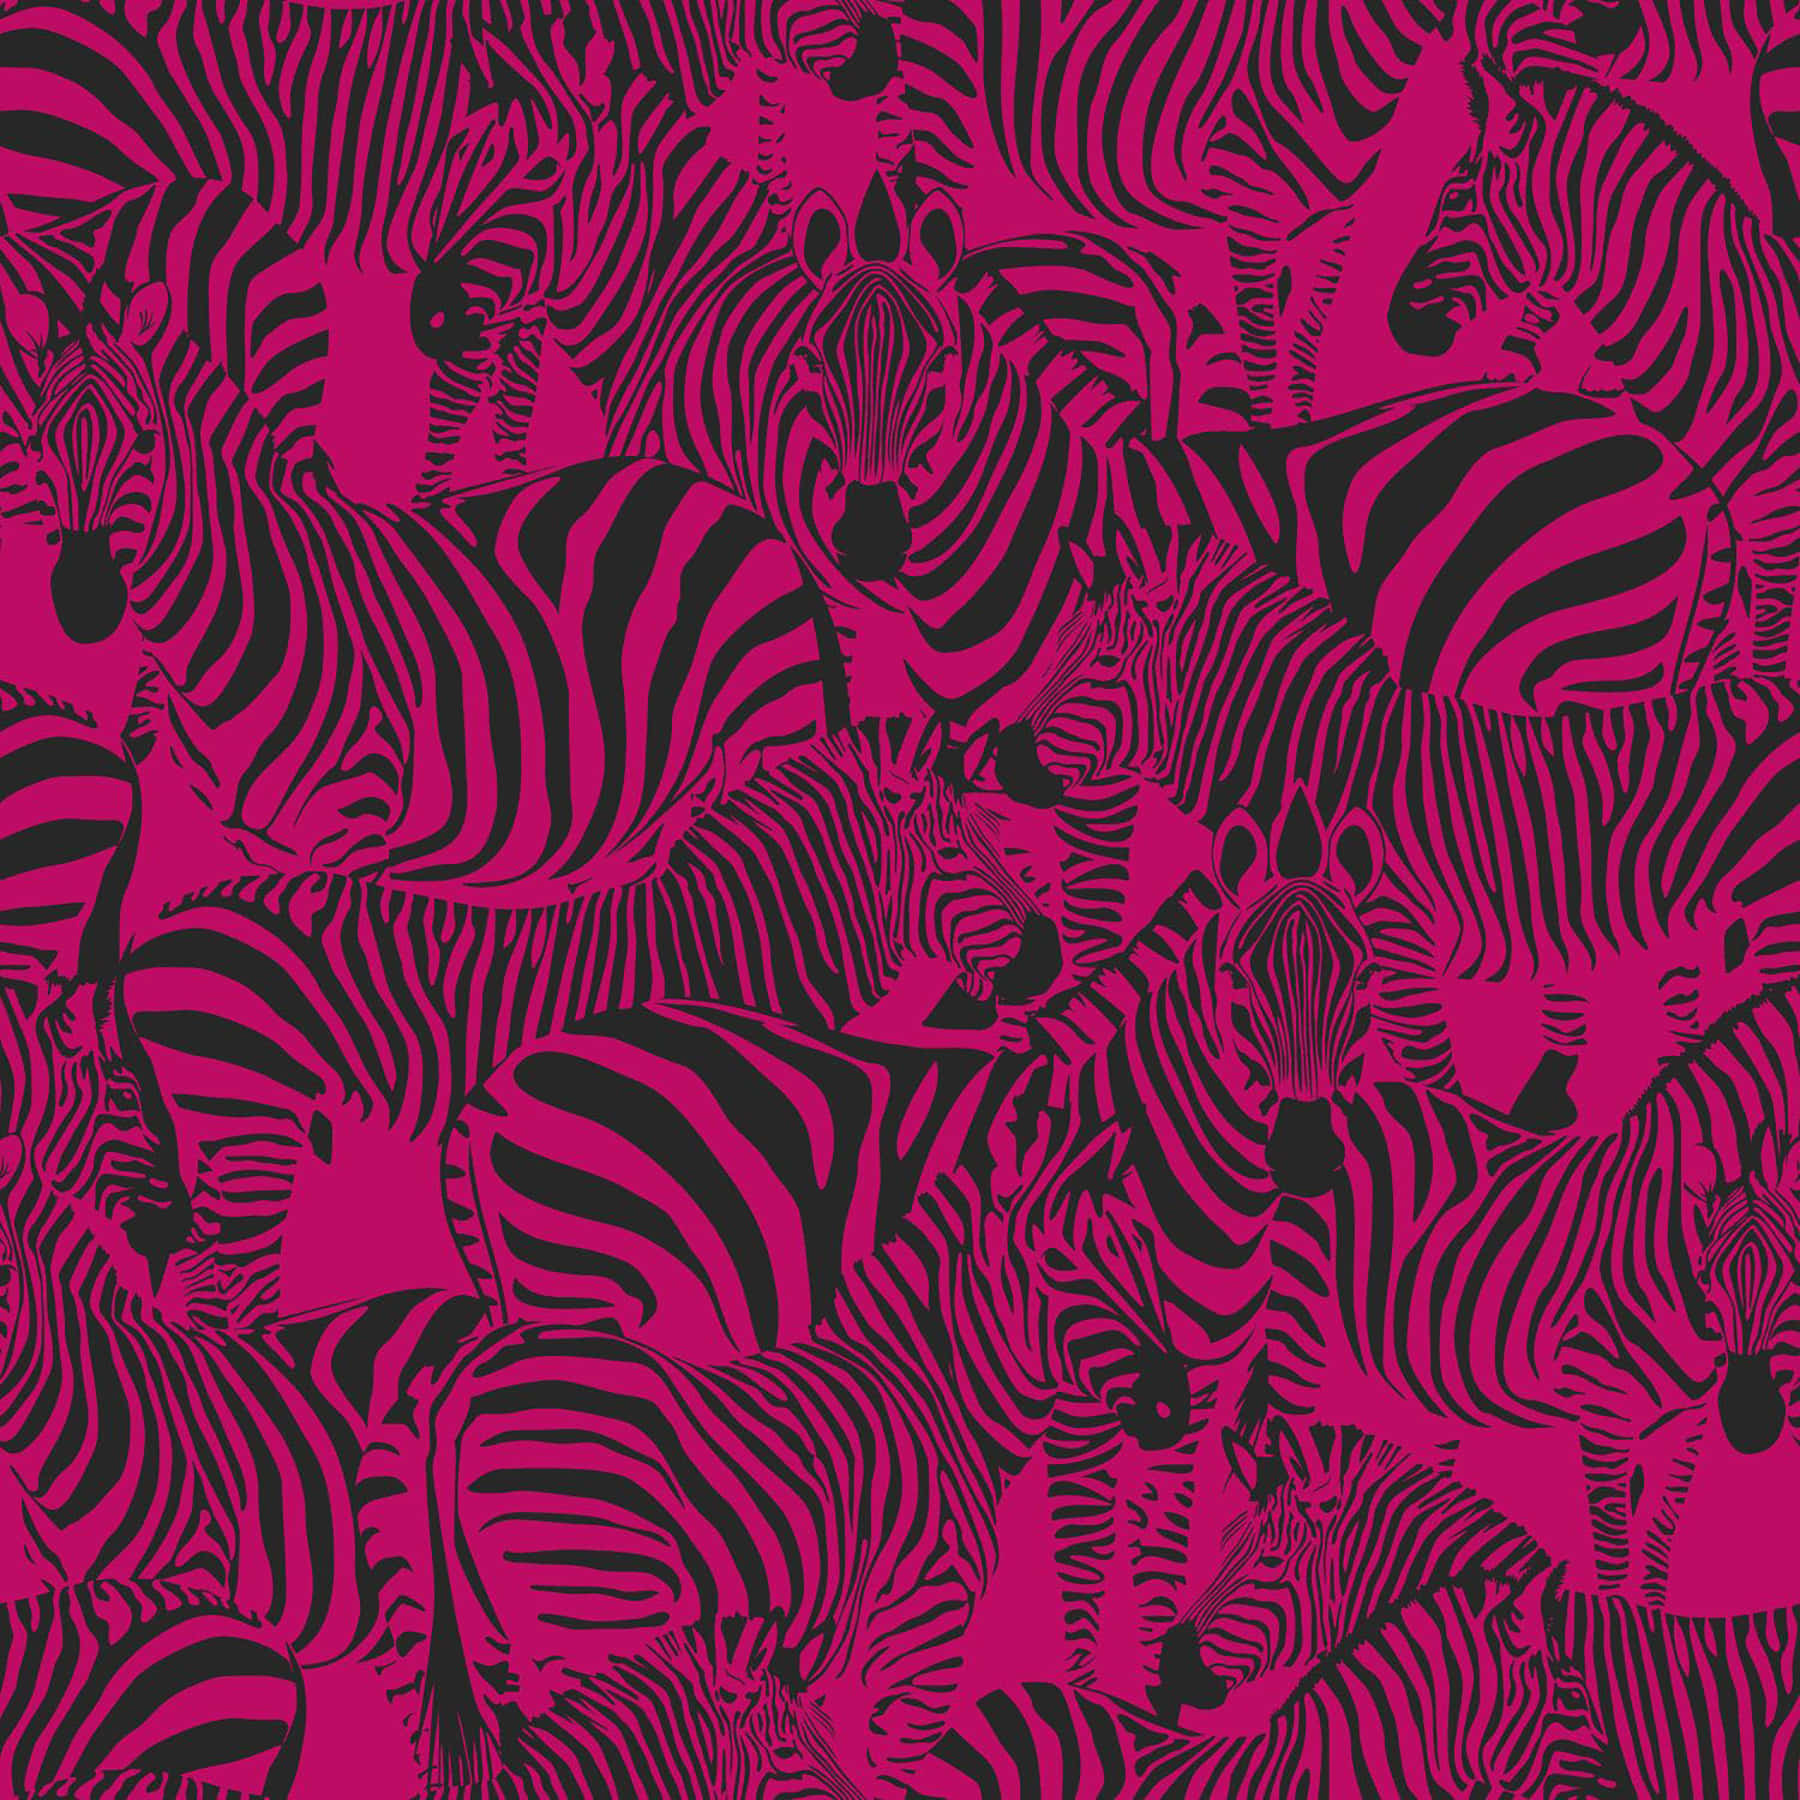 Dienacht Erhellt Mit Pinken Zebras Wallpaper